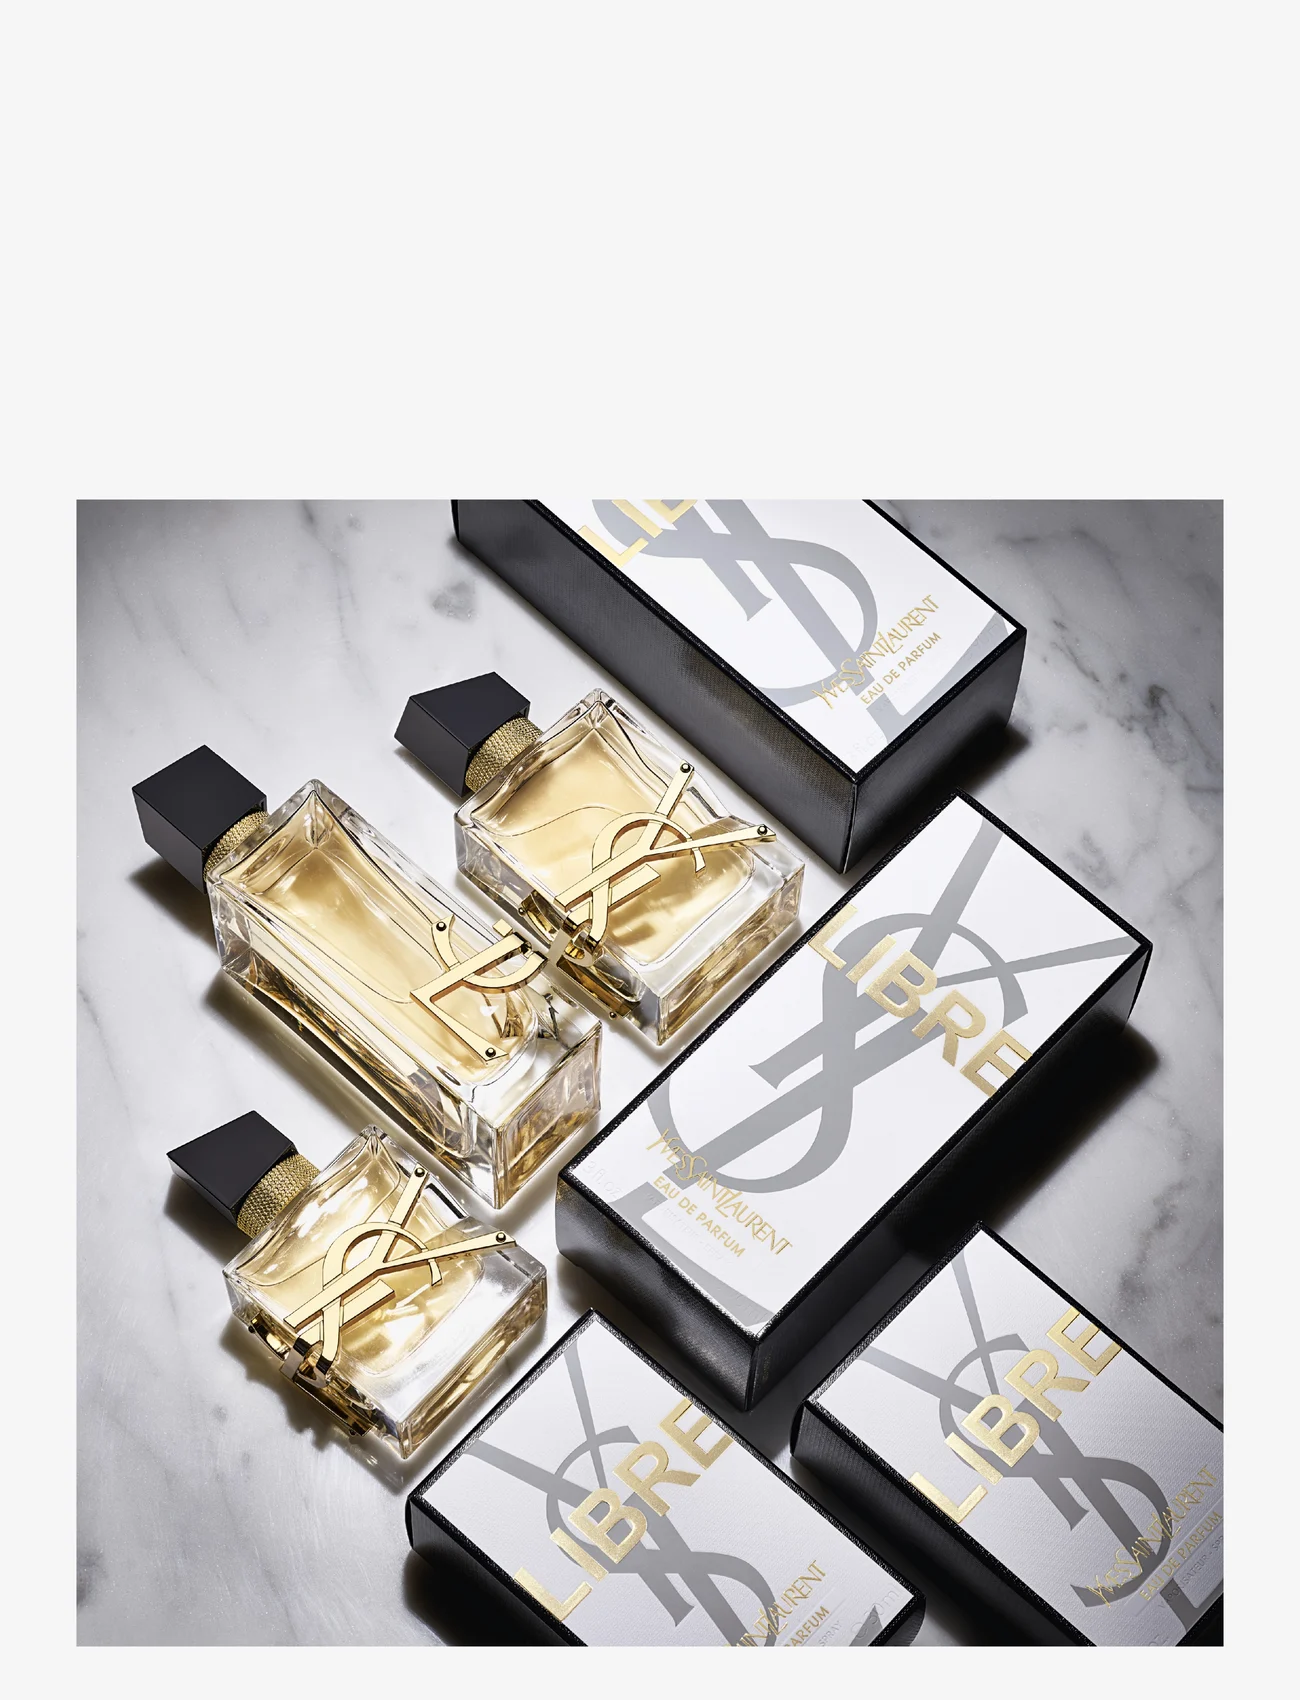 Yves Saint Laurent - Libre Eau de Parfum - mellem 500-1000 kr - no colour - 14